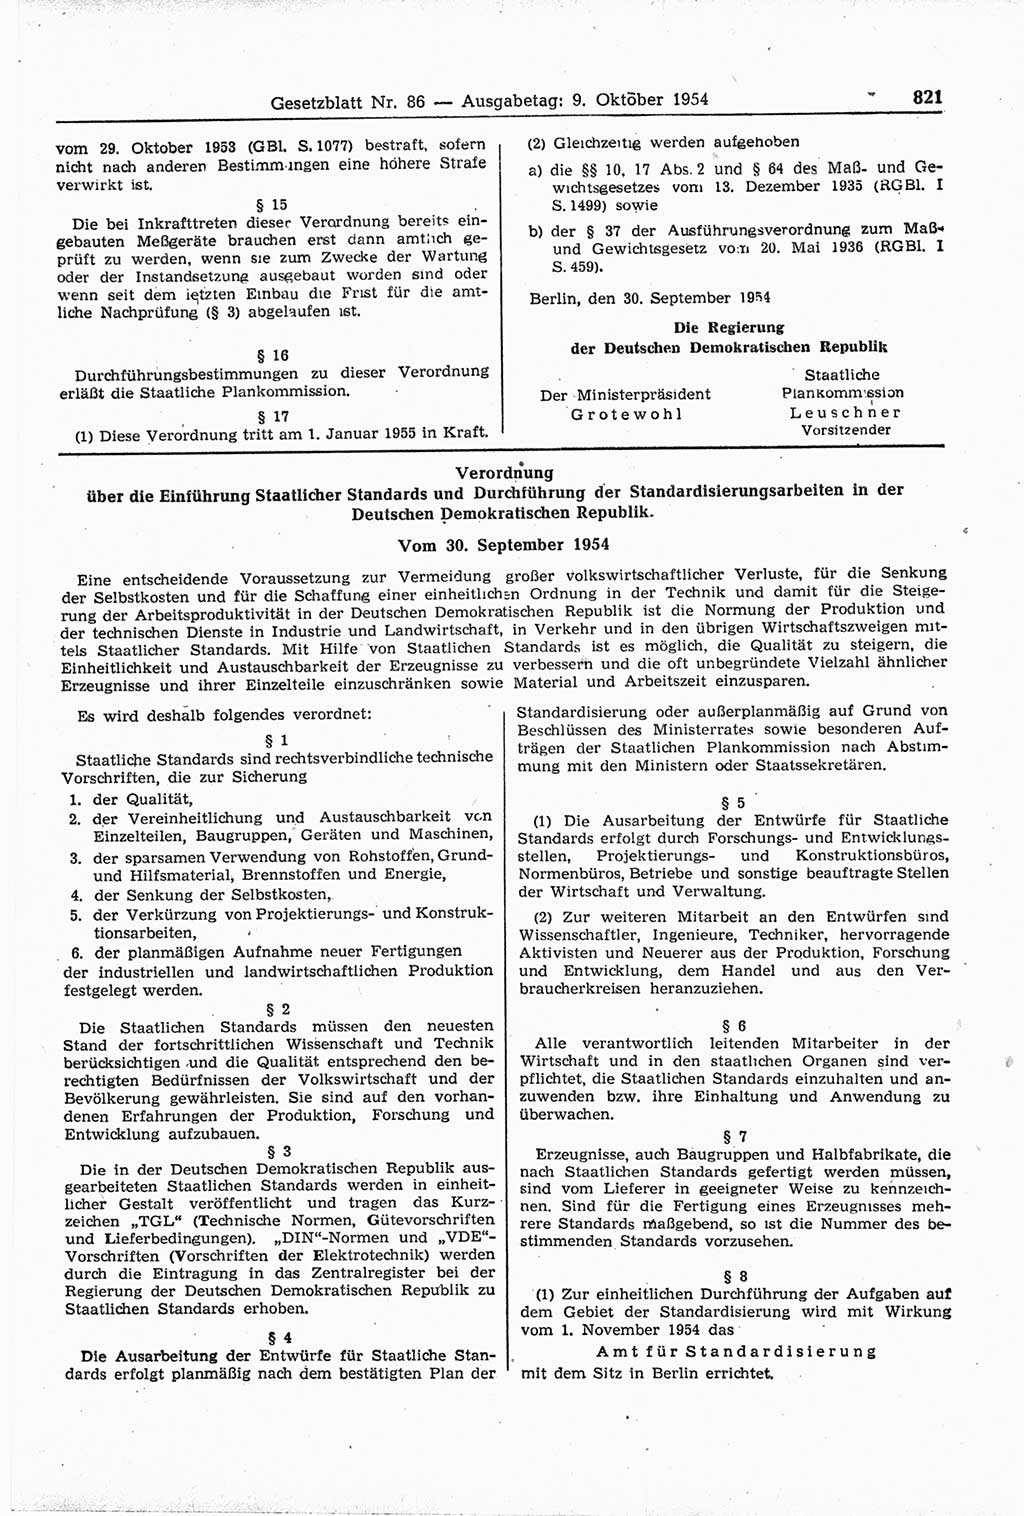 Gesetzblatt (GBl.) der Deutschen Demokratischen Republik (DDR) 1954, Seite 821 (GBl. DDR 1954, S. 821)